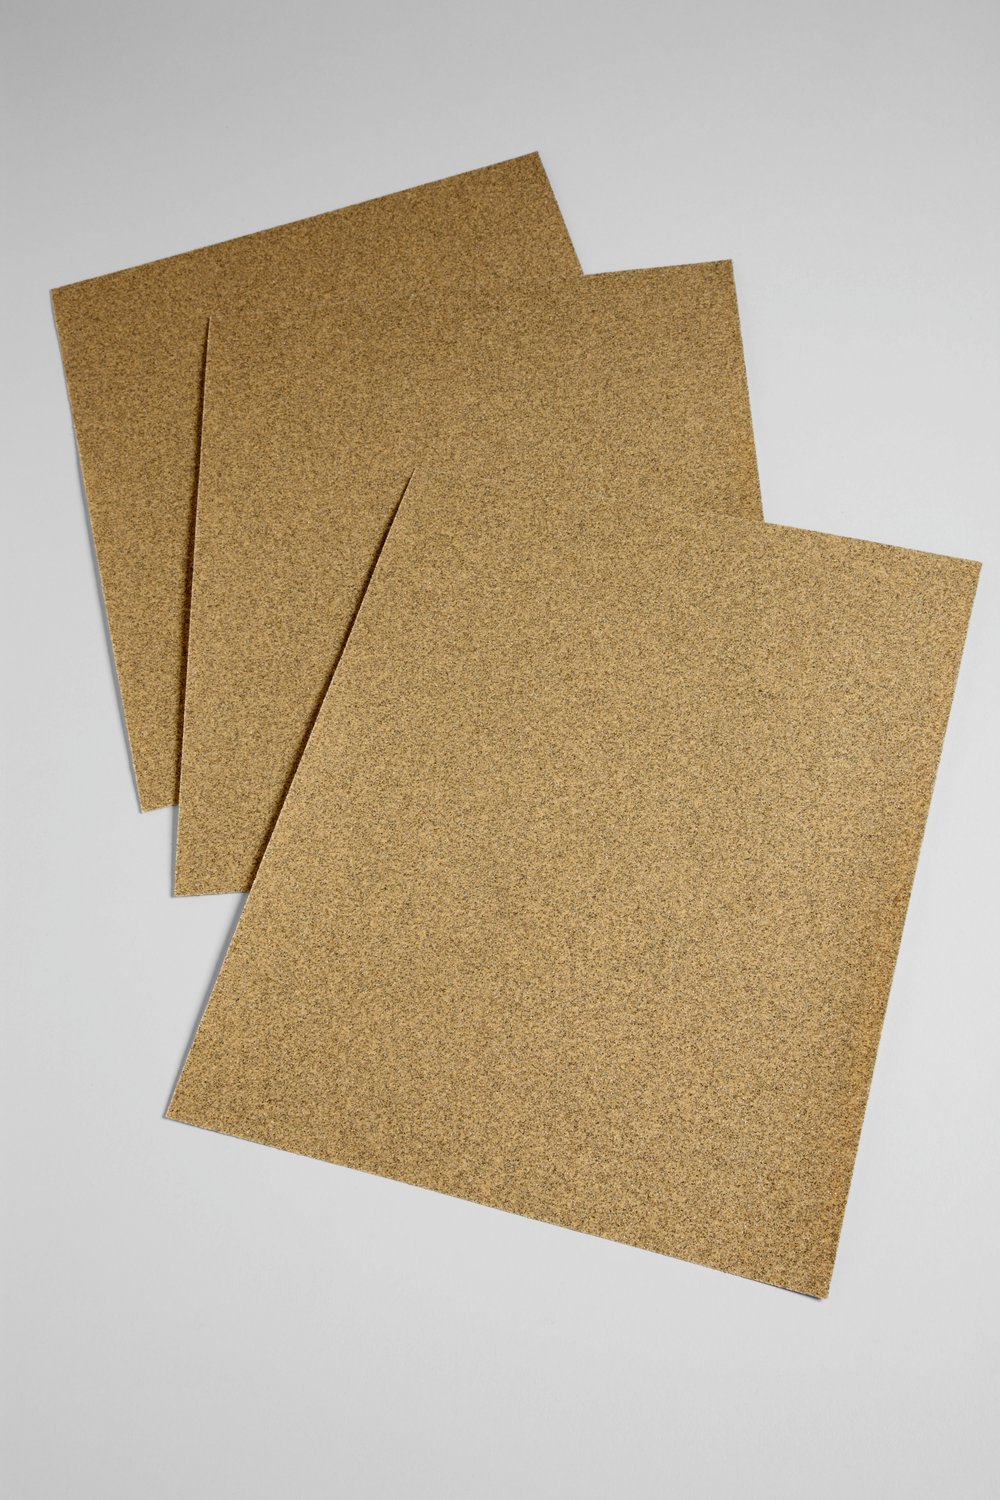 7000120218 - 3M Paper Sheet 336U, 2113, 120 C-weight, 9 in x 11 in, 100/Pac, 1000
ea/Case